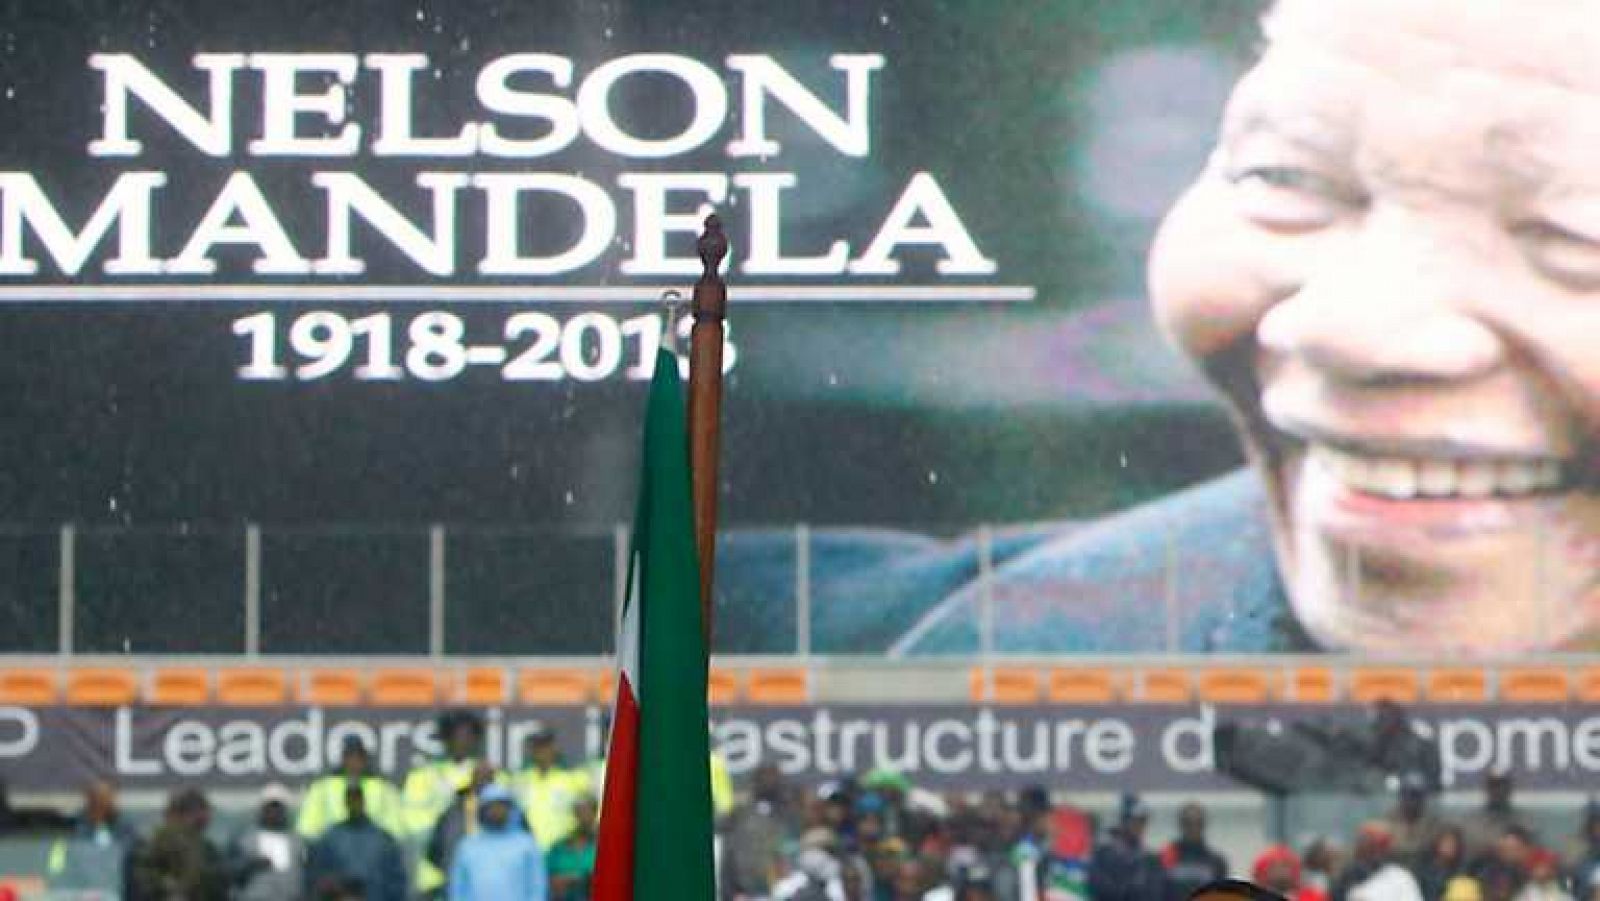 Especial informativo - Funeral por Mandela. Parte 4